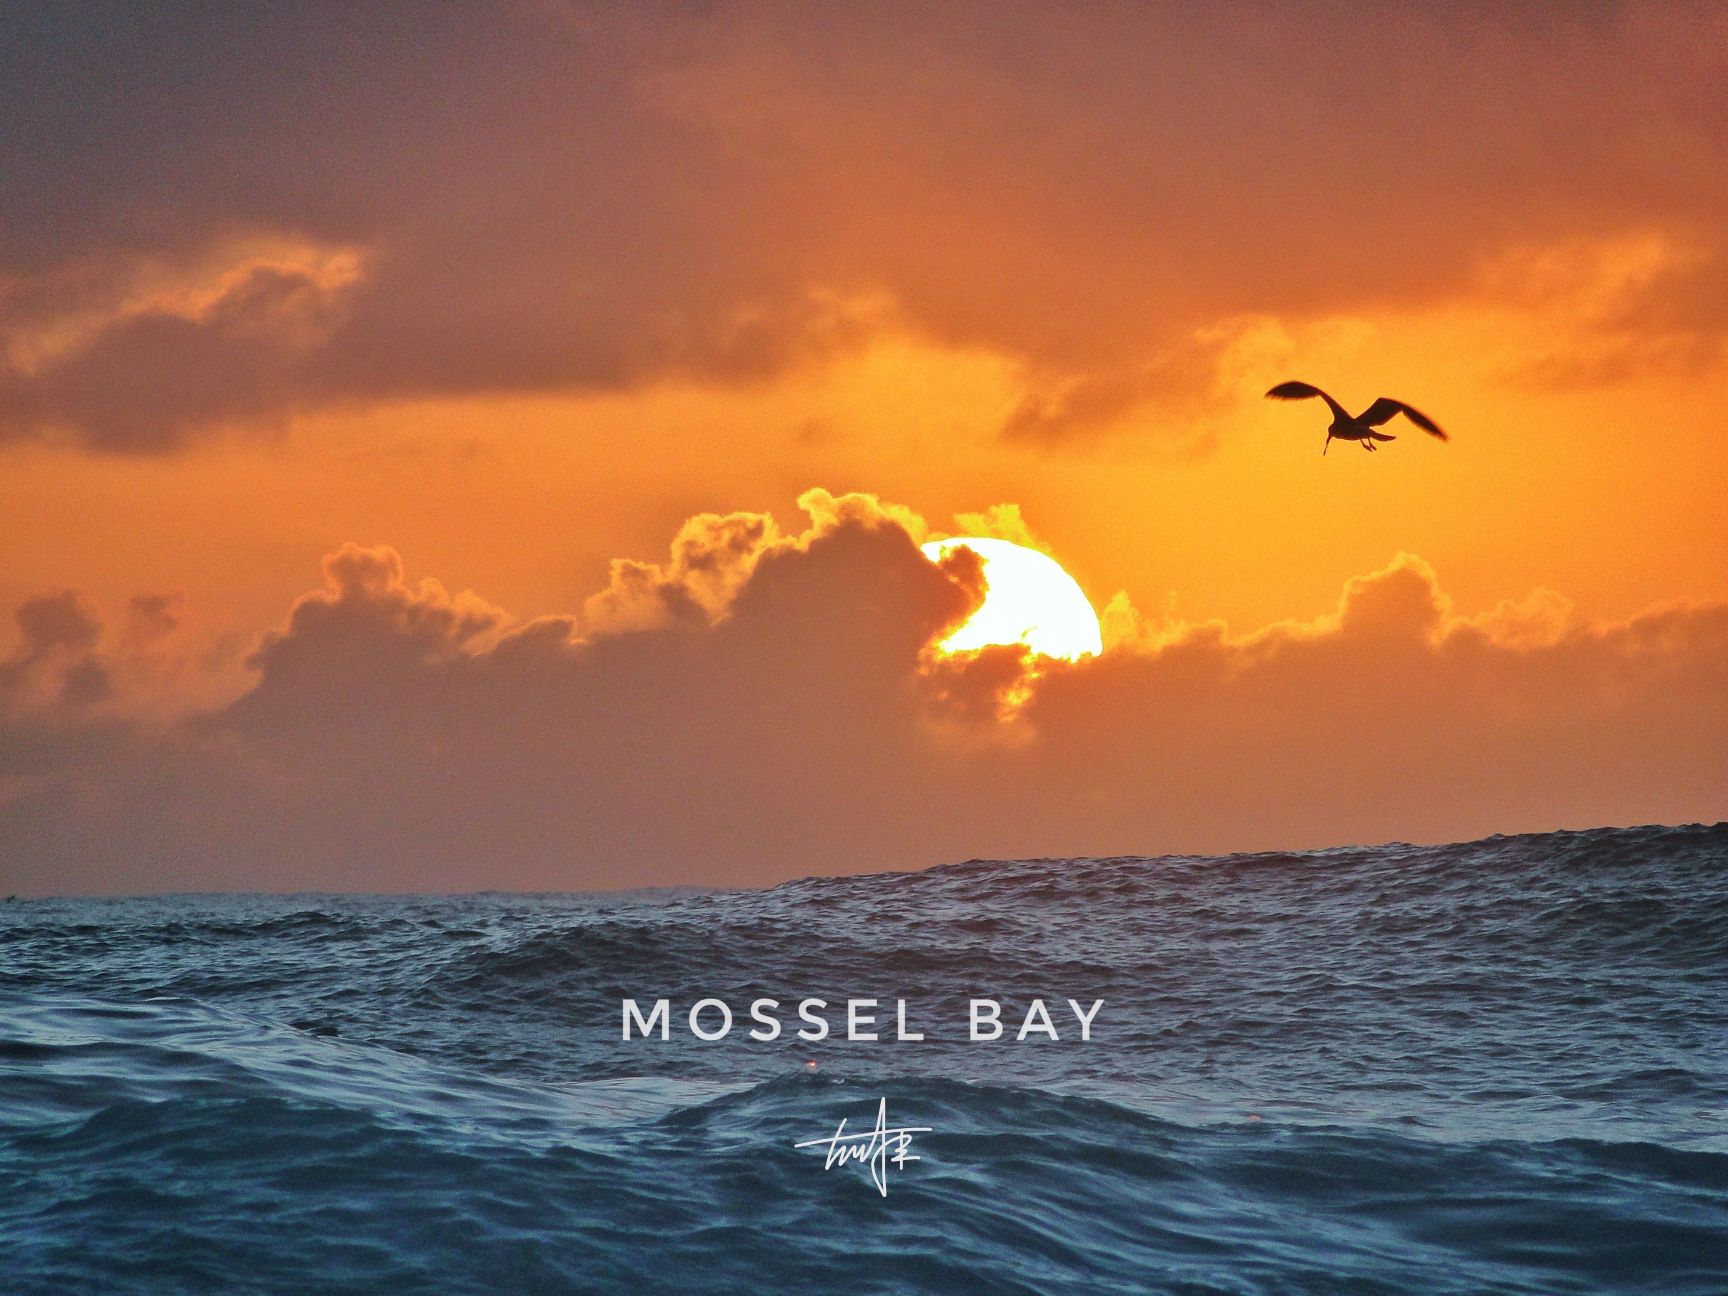 摩梭湾(MosselBay)是一个极具欧洲风格的海滨城镇，也是葡萄牙航海家迪亚士最先登陆南非的地点。